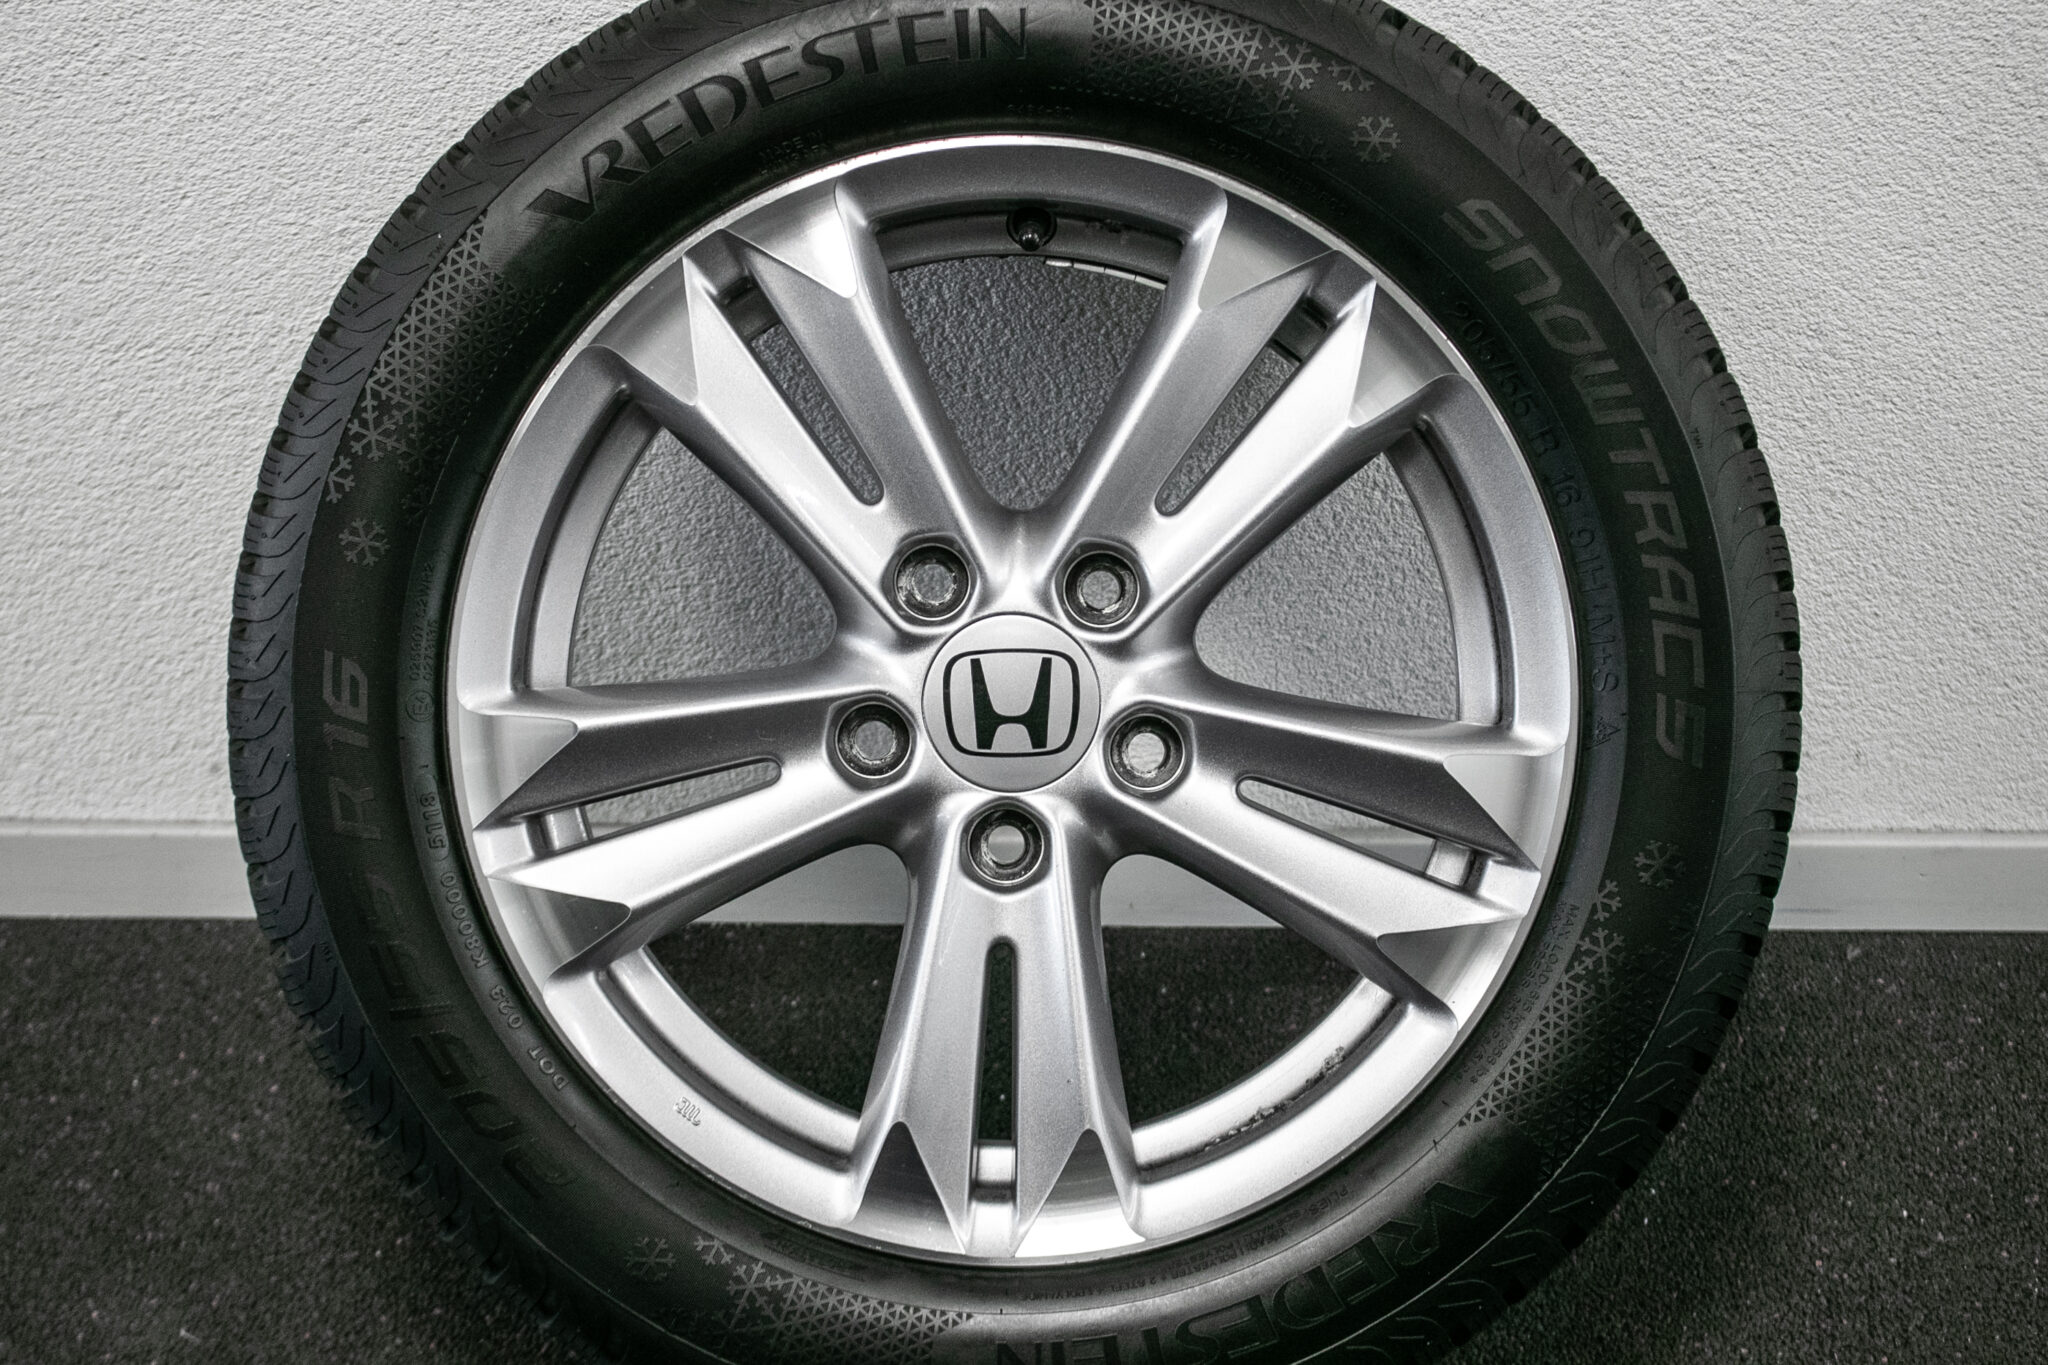 16" Winterwielen voor de Honda CR-Z
€199,- 
Gebruikt. Profieldiepte: 8mm - 7.5mm